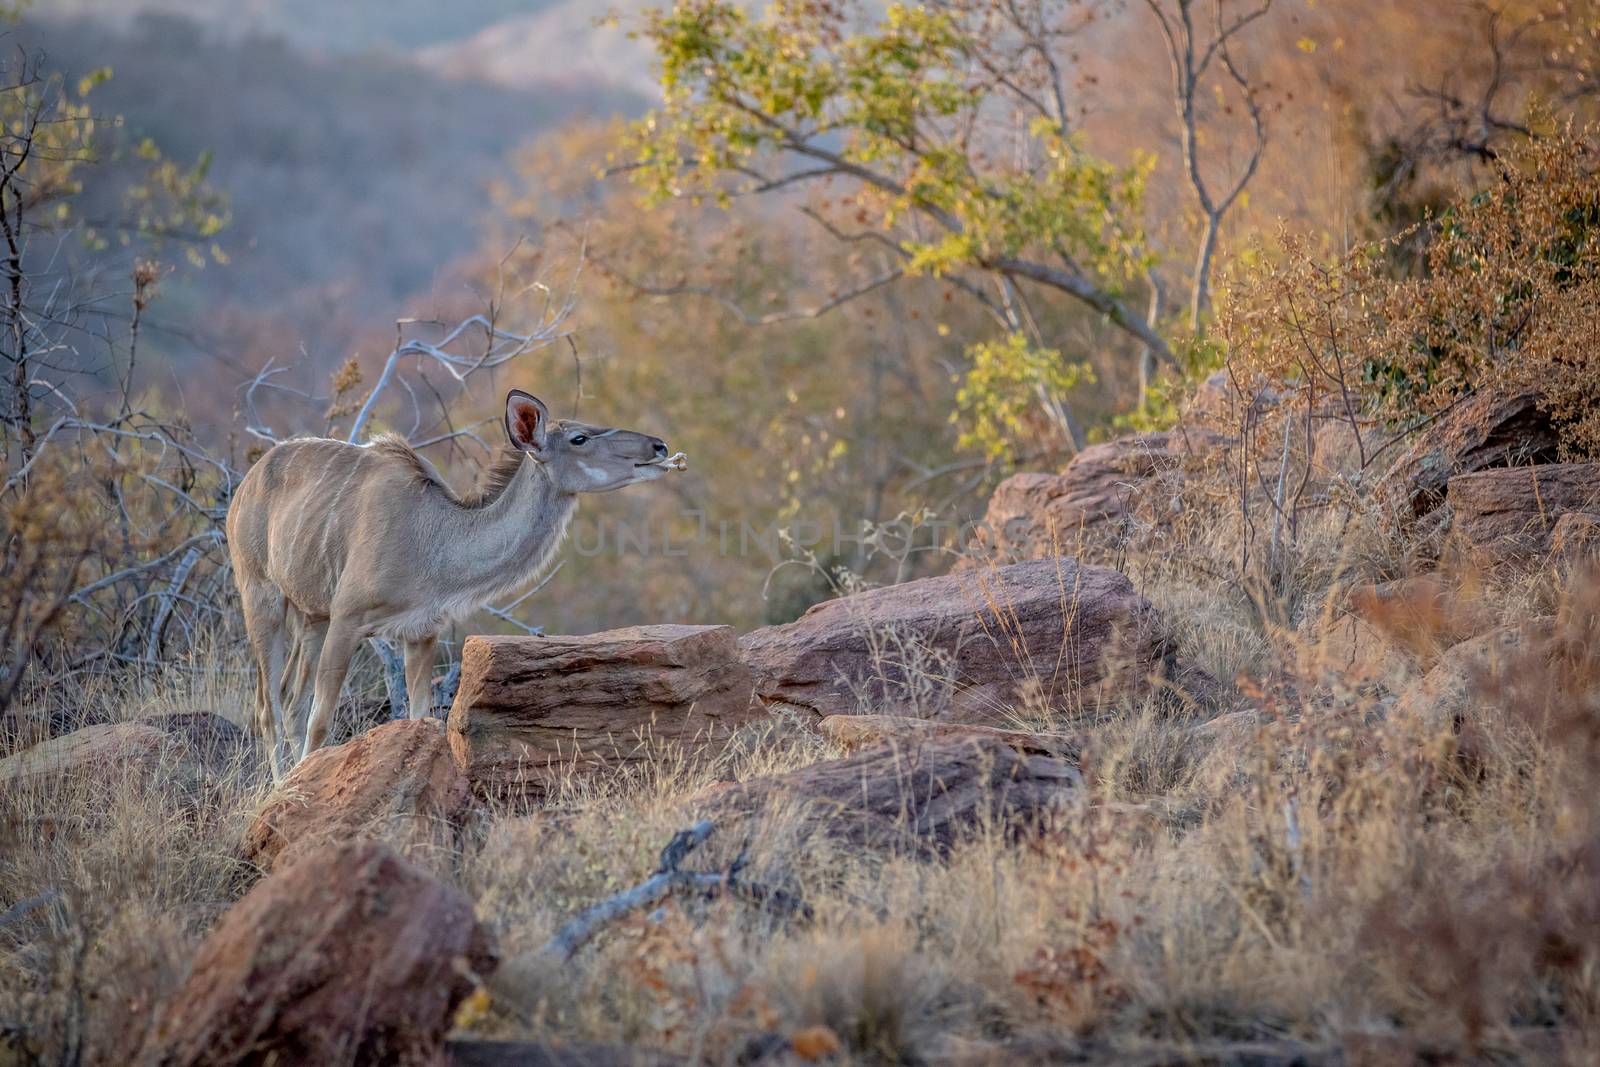 Female Kudu chewing on a bone. by Simoneemanphotography